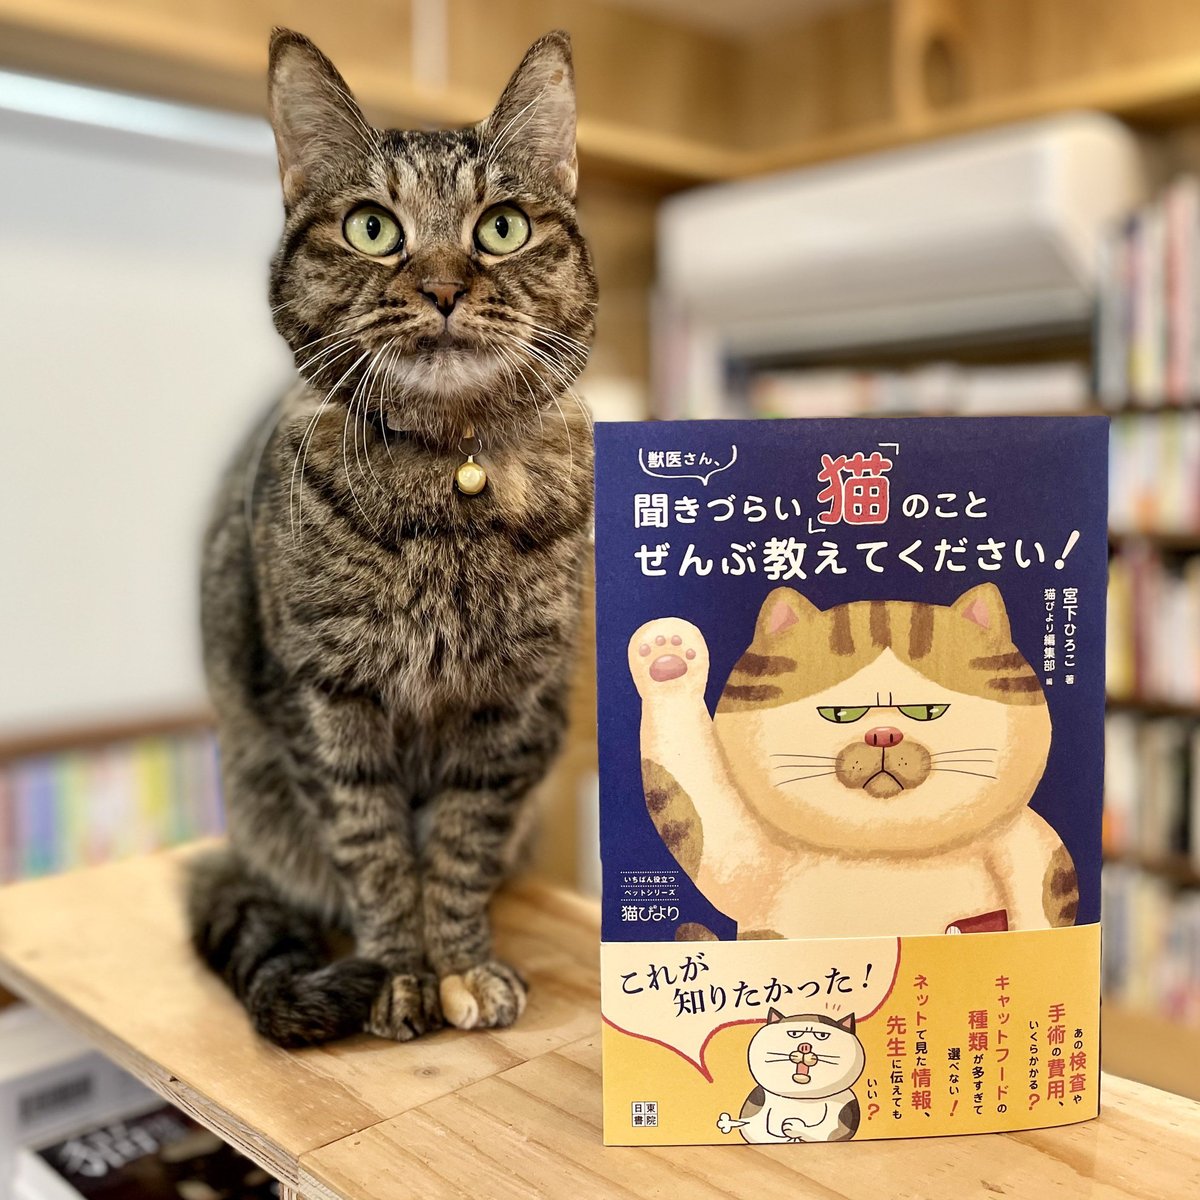 Meow　獣医さん、聞きづらい「猫」のこと　Books...　ぜんぶ教えてください！　Cat's